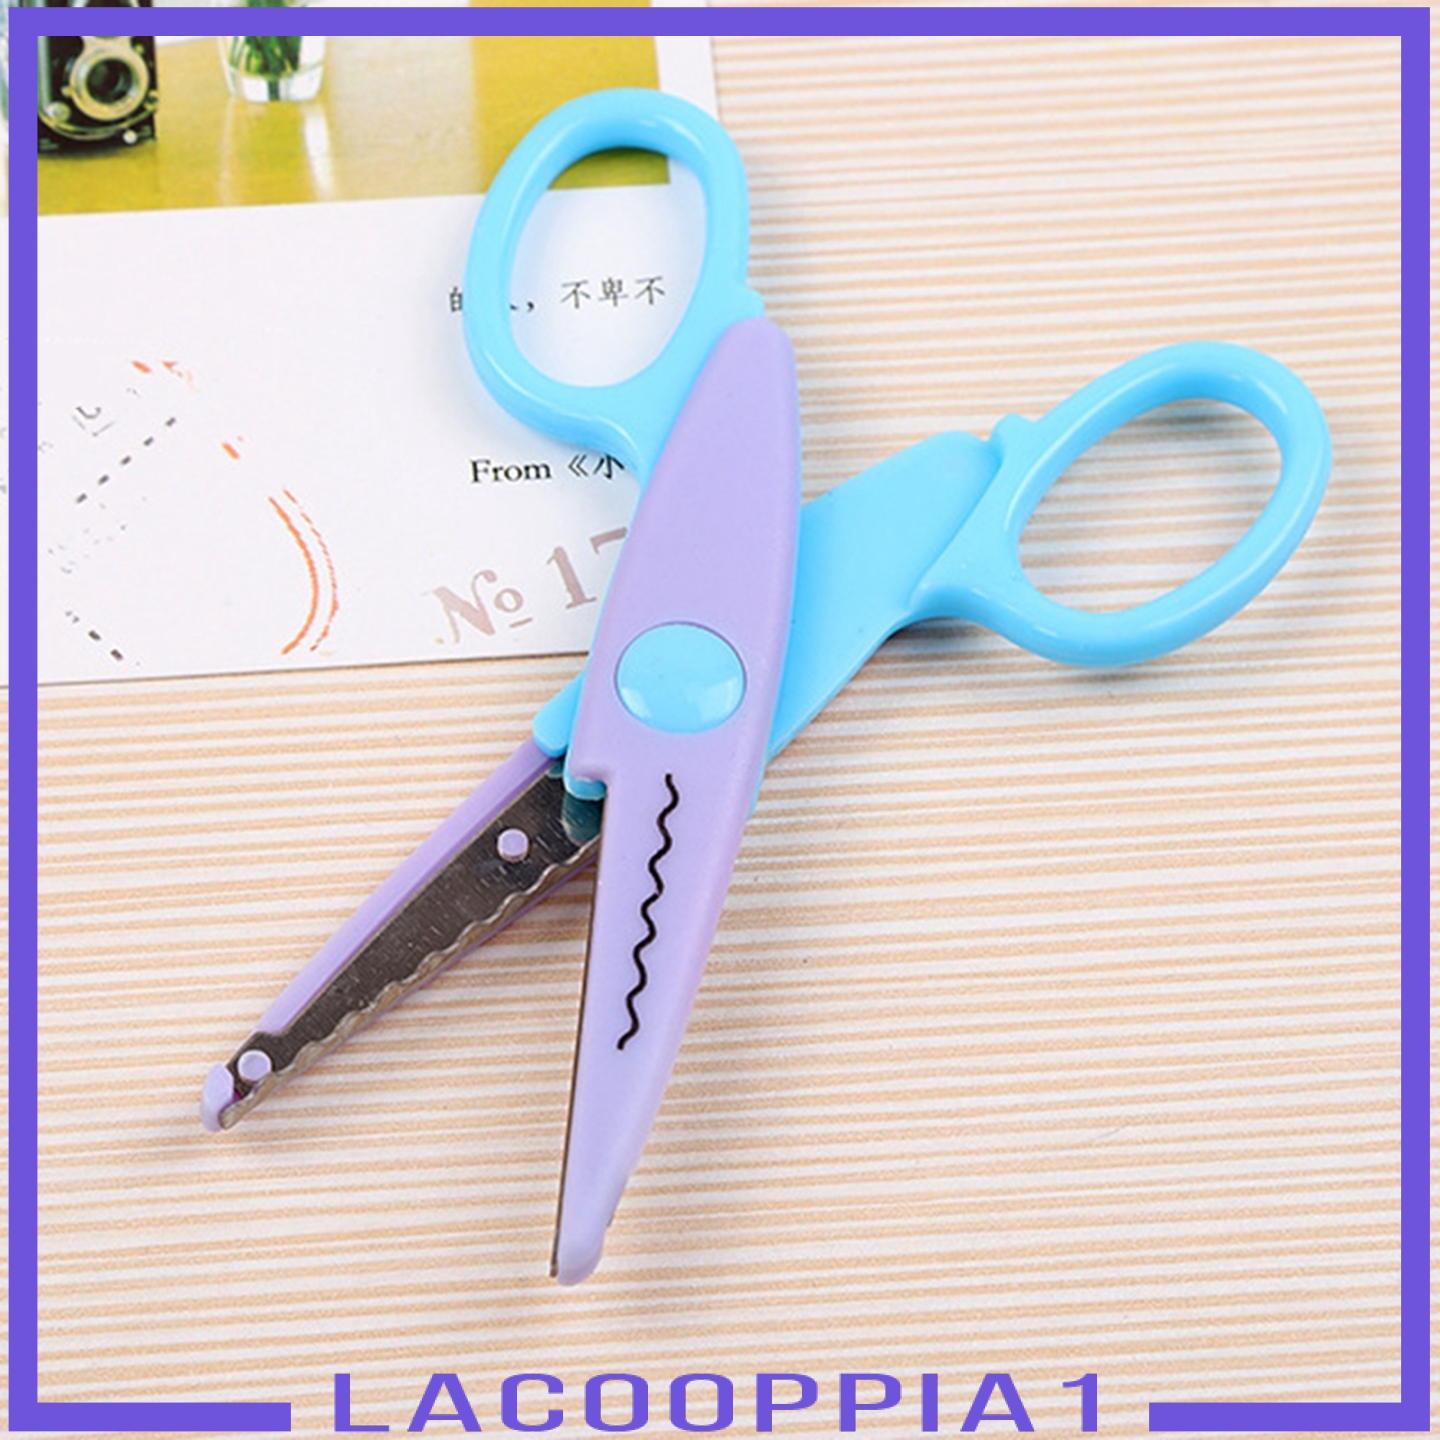 Bộ 5 Thẻ Đục Lỗ Giấy Mini Dùng Làm Đồ Thủ Công Diy Tiện Dụng Lacooppia1